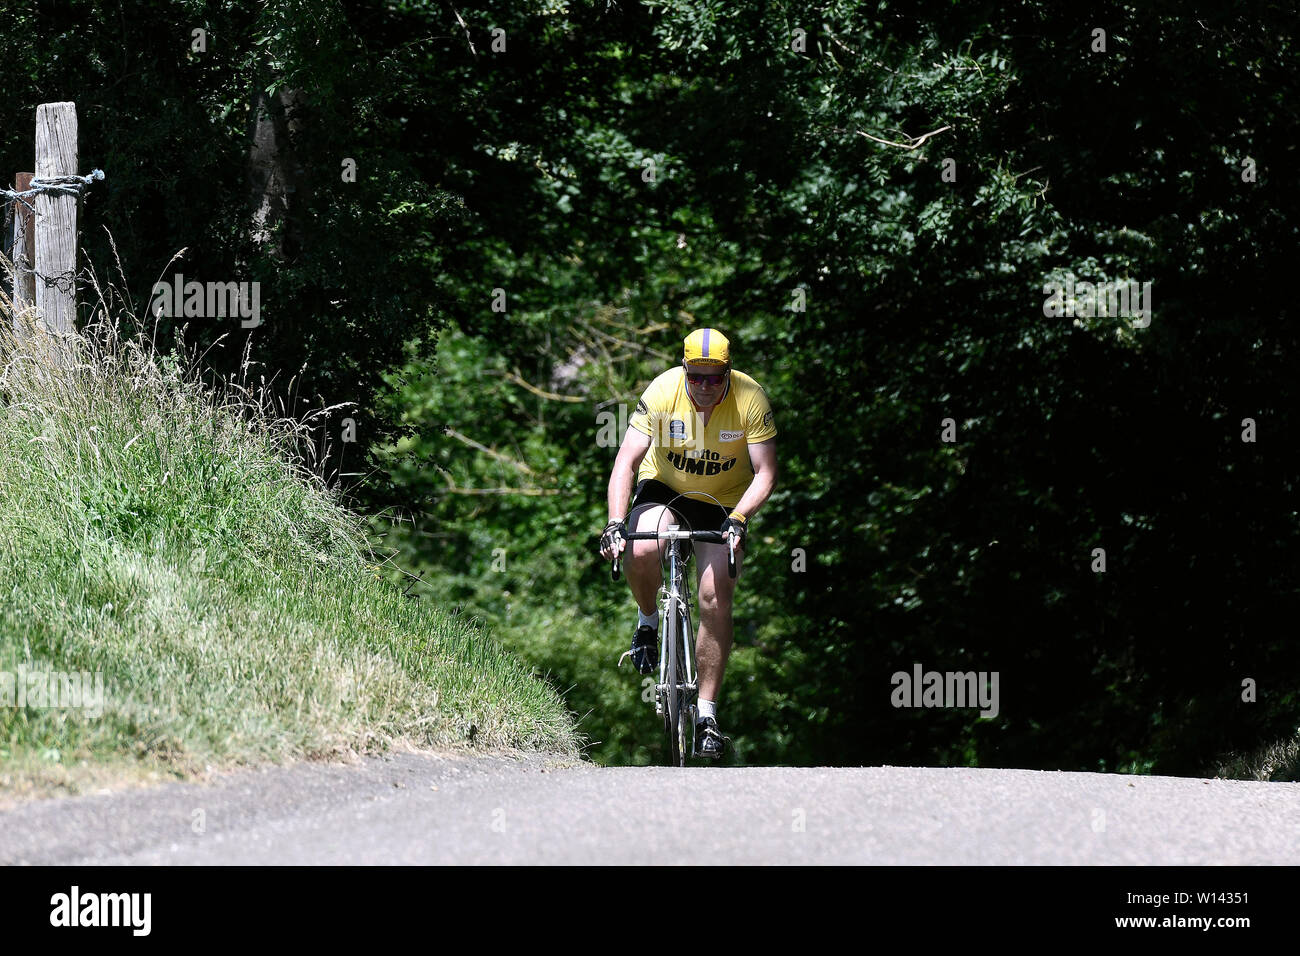 Partecipante del Limburgo eroica, un ciclo tour storico per bici da corsa nella regione olandese del Limburgo. Foto Stock